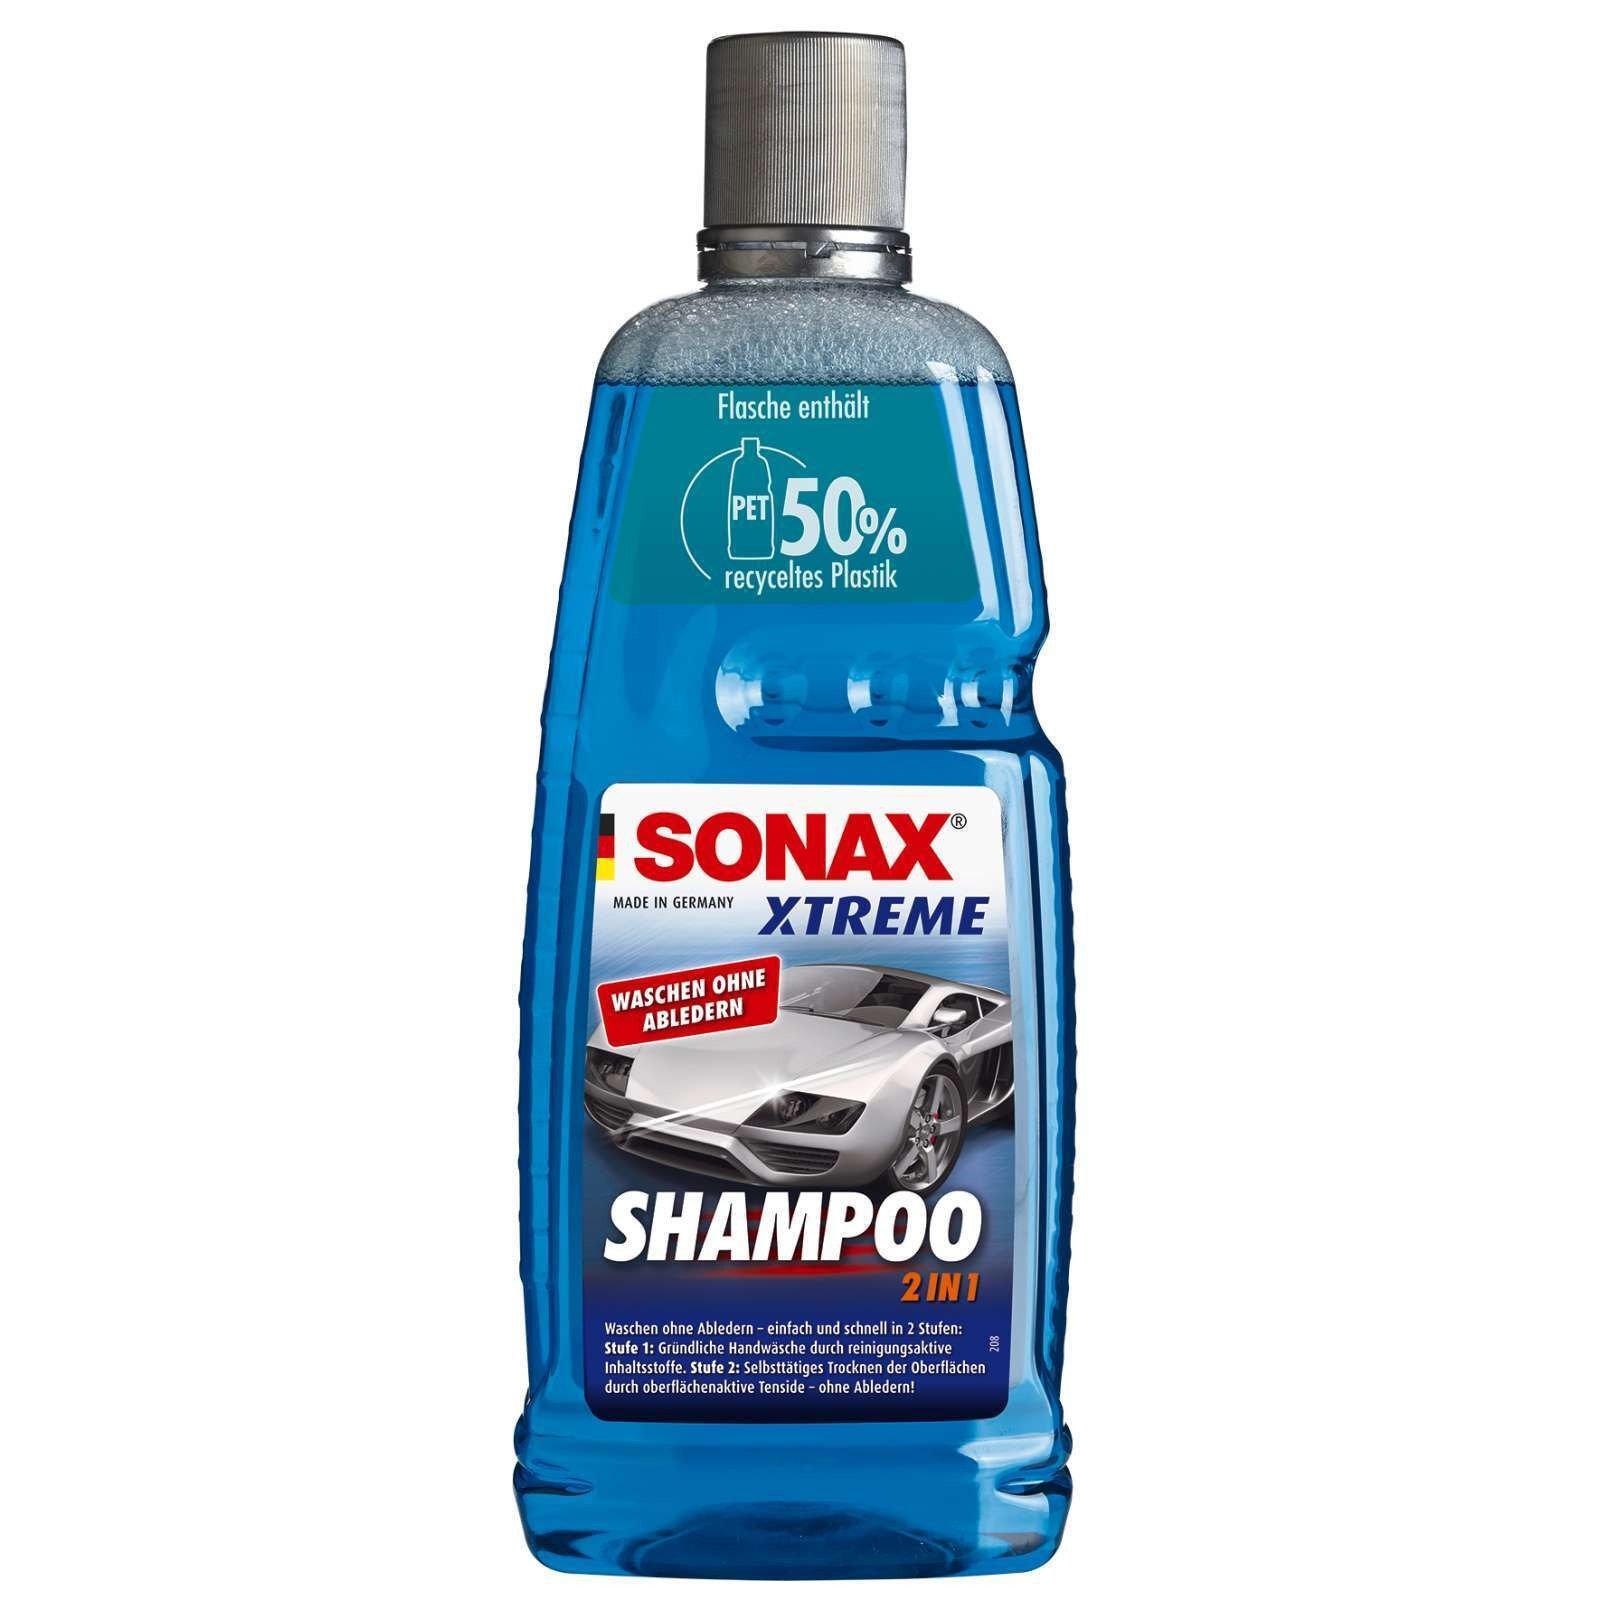 Bilschampo SONAX Xtreme Shampoo 2in1 1l